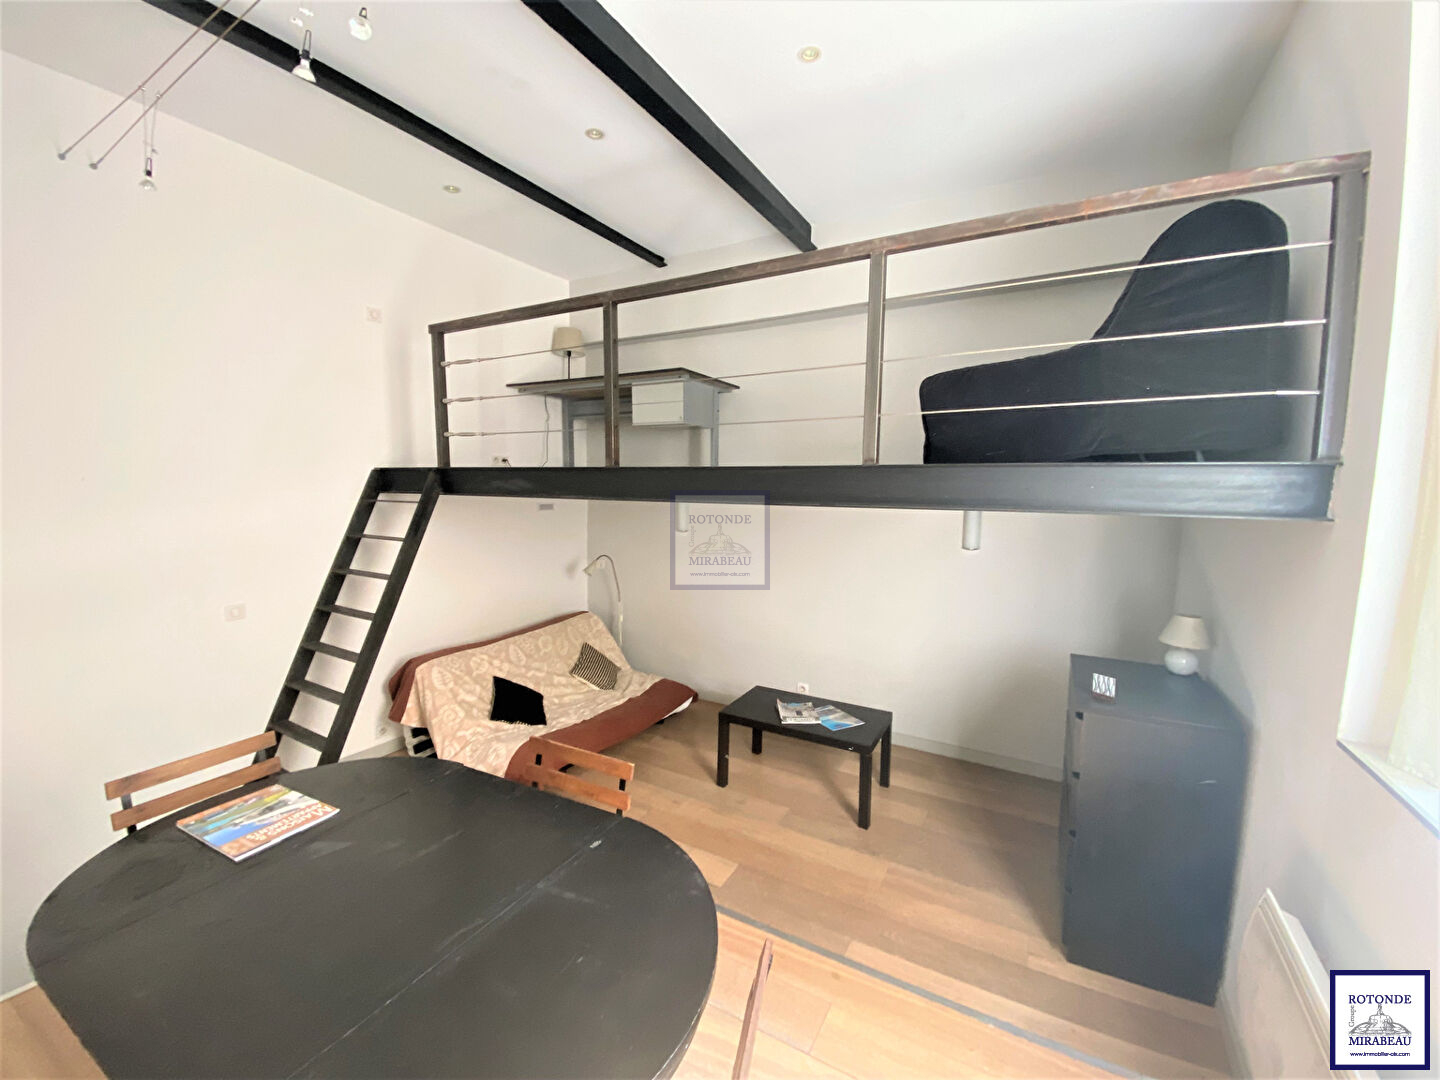 Vente Appartement AIX EN PROVENCE surface habitable de 33.29 m²